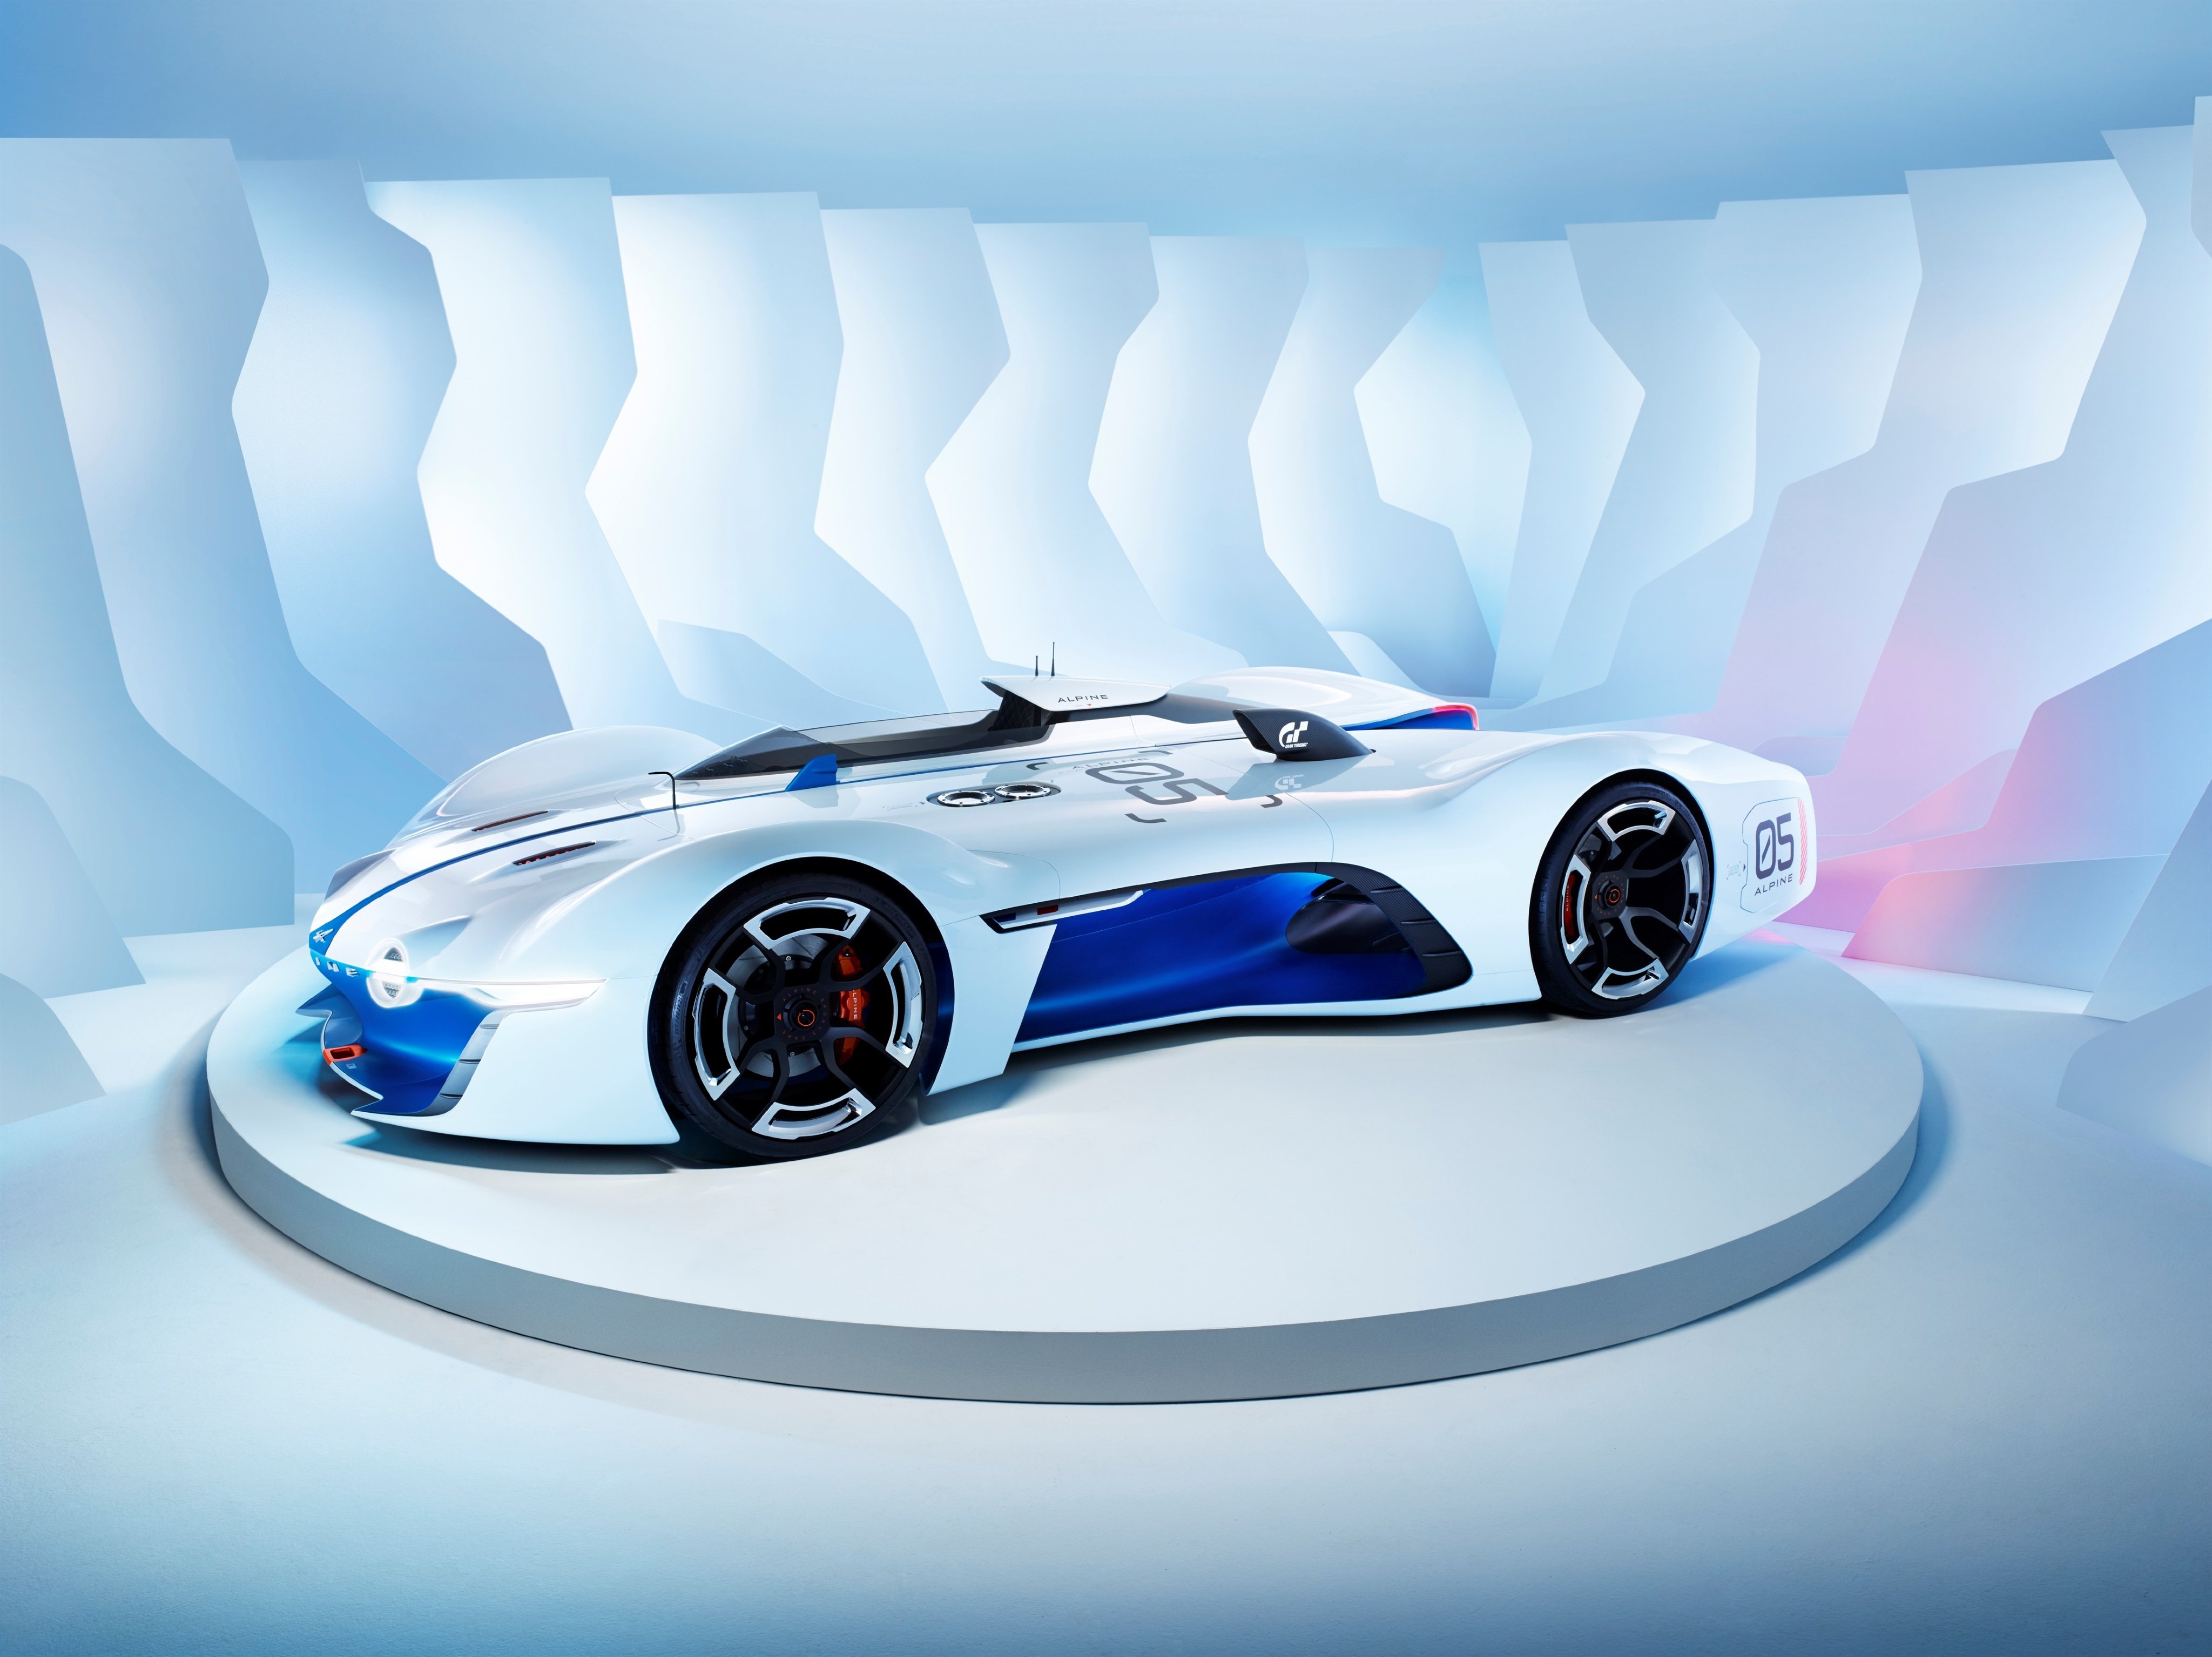 2015, Alpine, Vision, Gran, Turismo, Nissan, Lemans, Le mans, Race, Racing Wallpaper